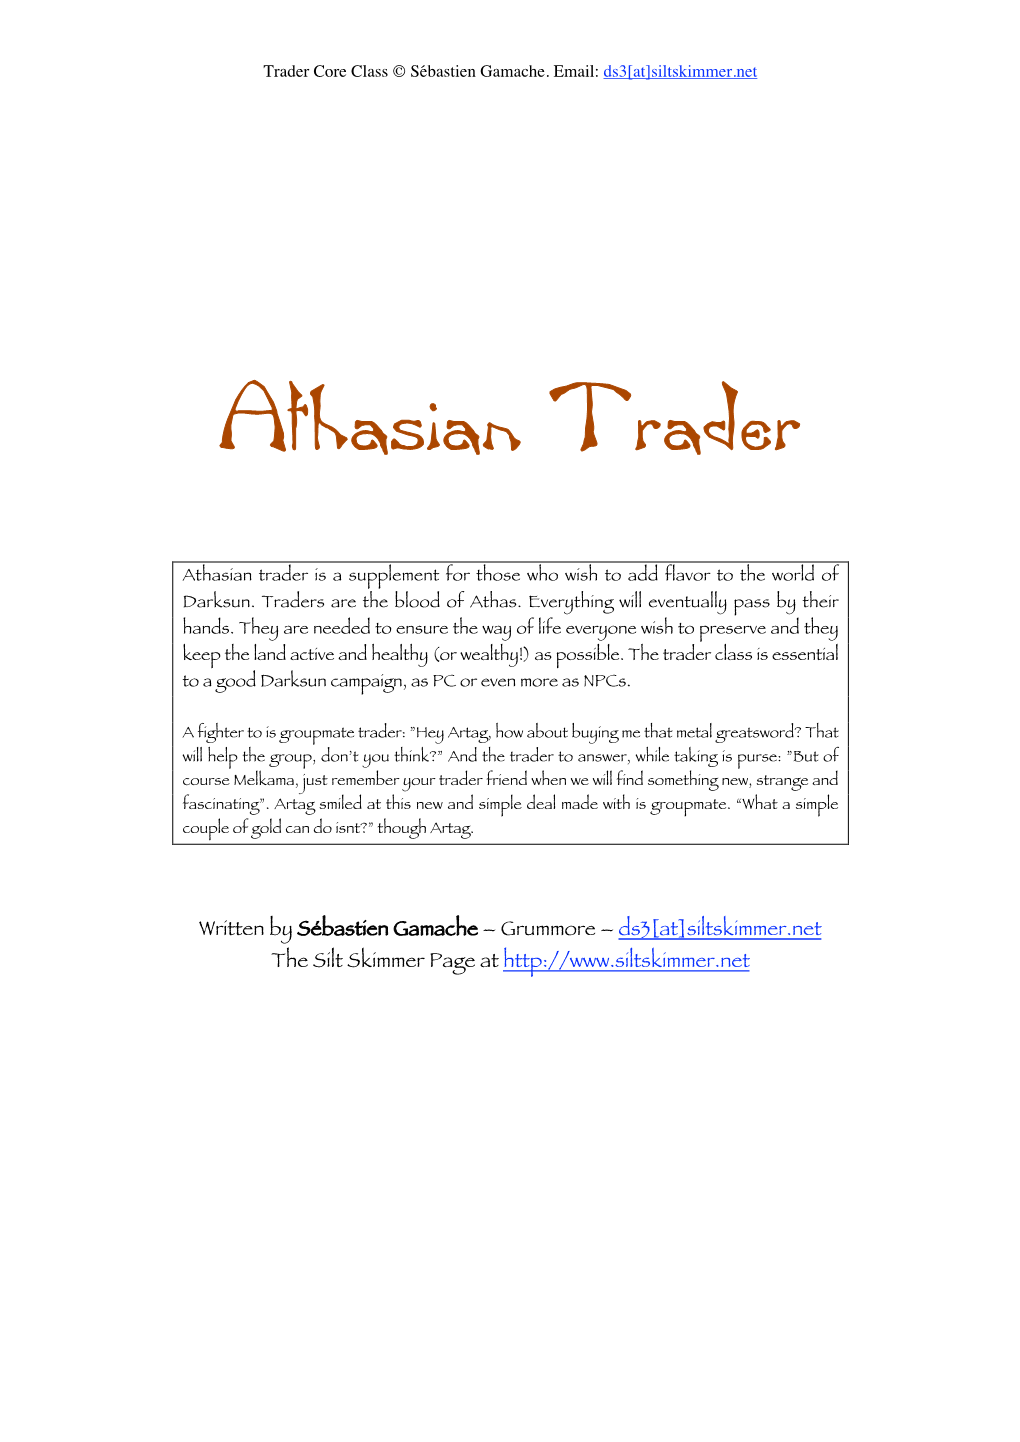 Athasian Trader